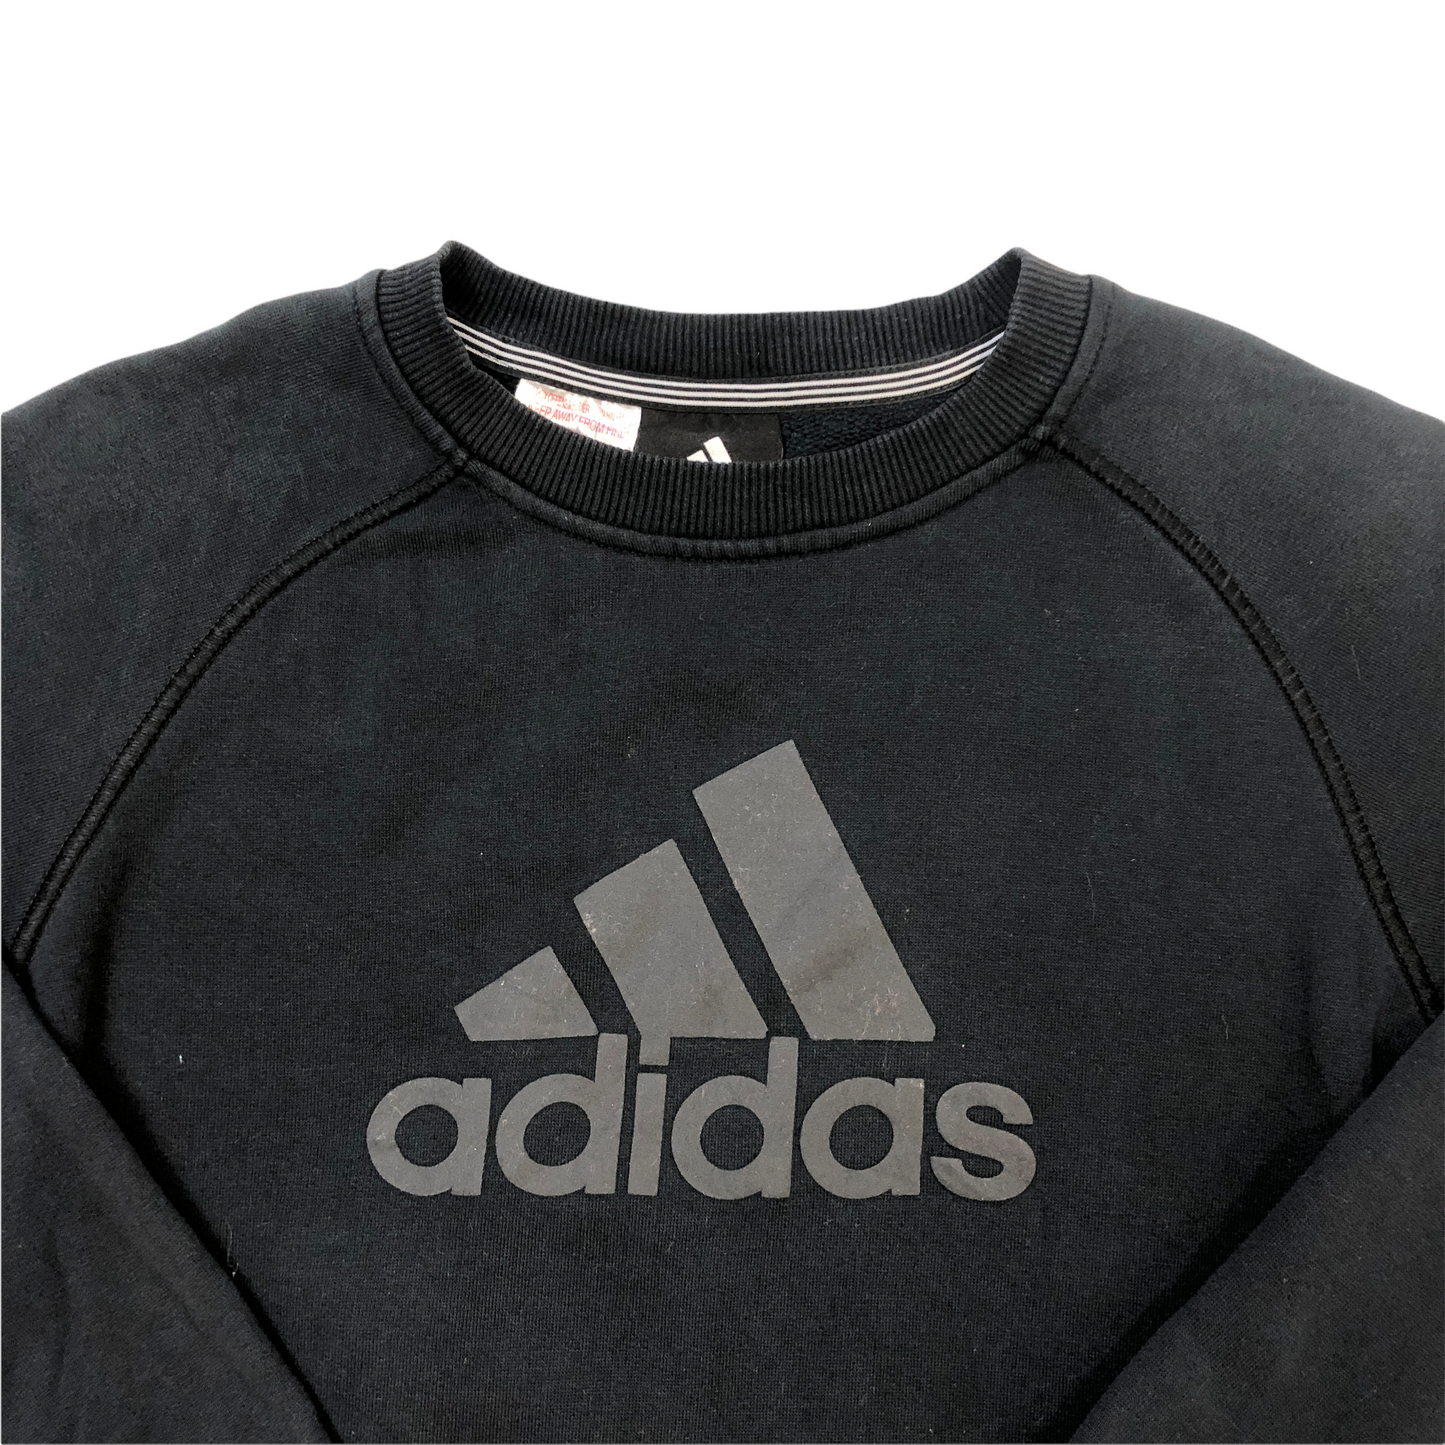 Vintage Adidas Sweatshirt (Age 9-10)